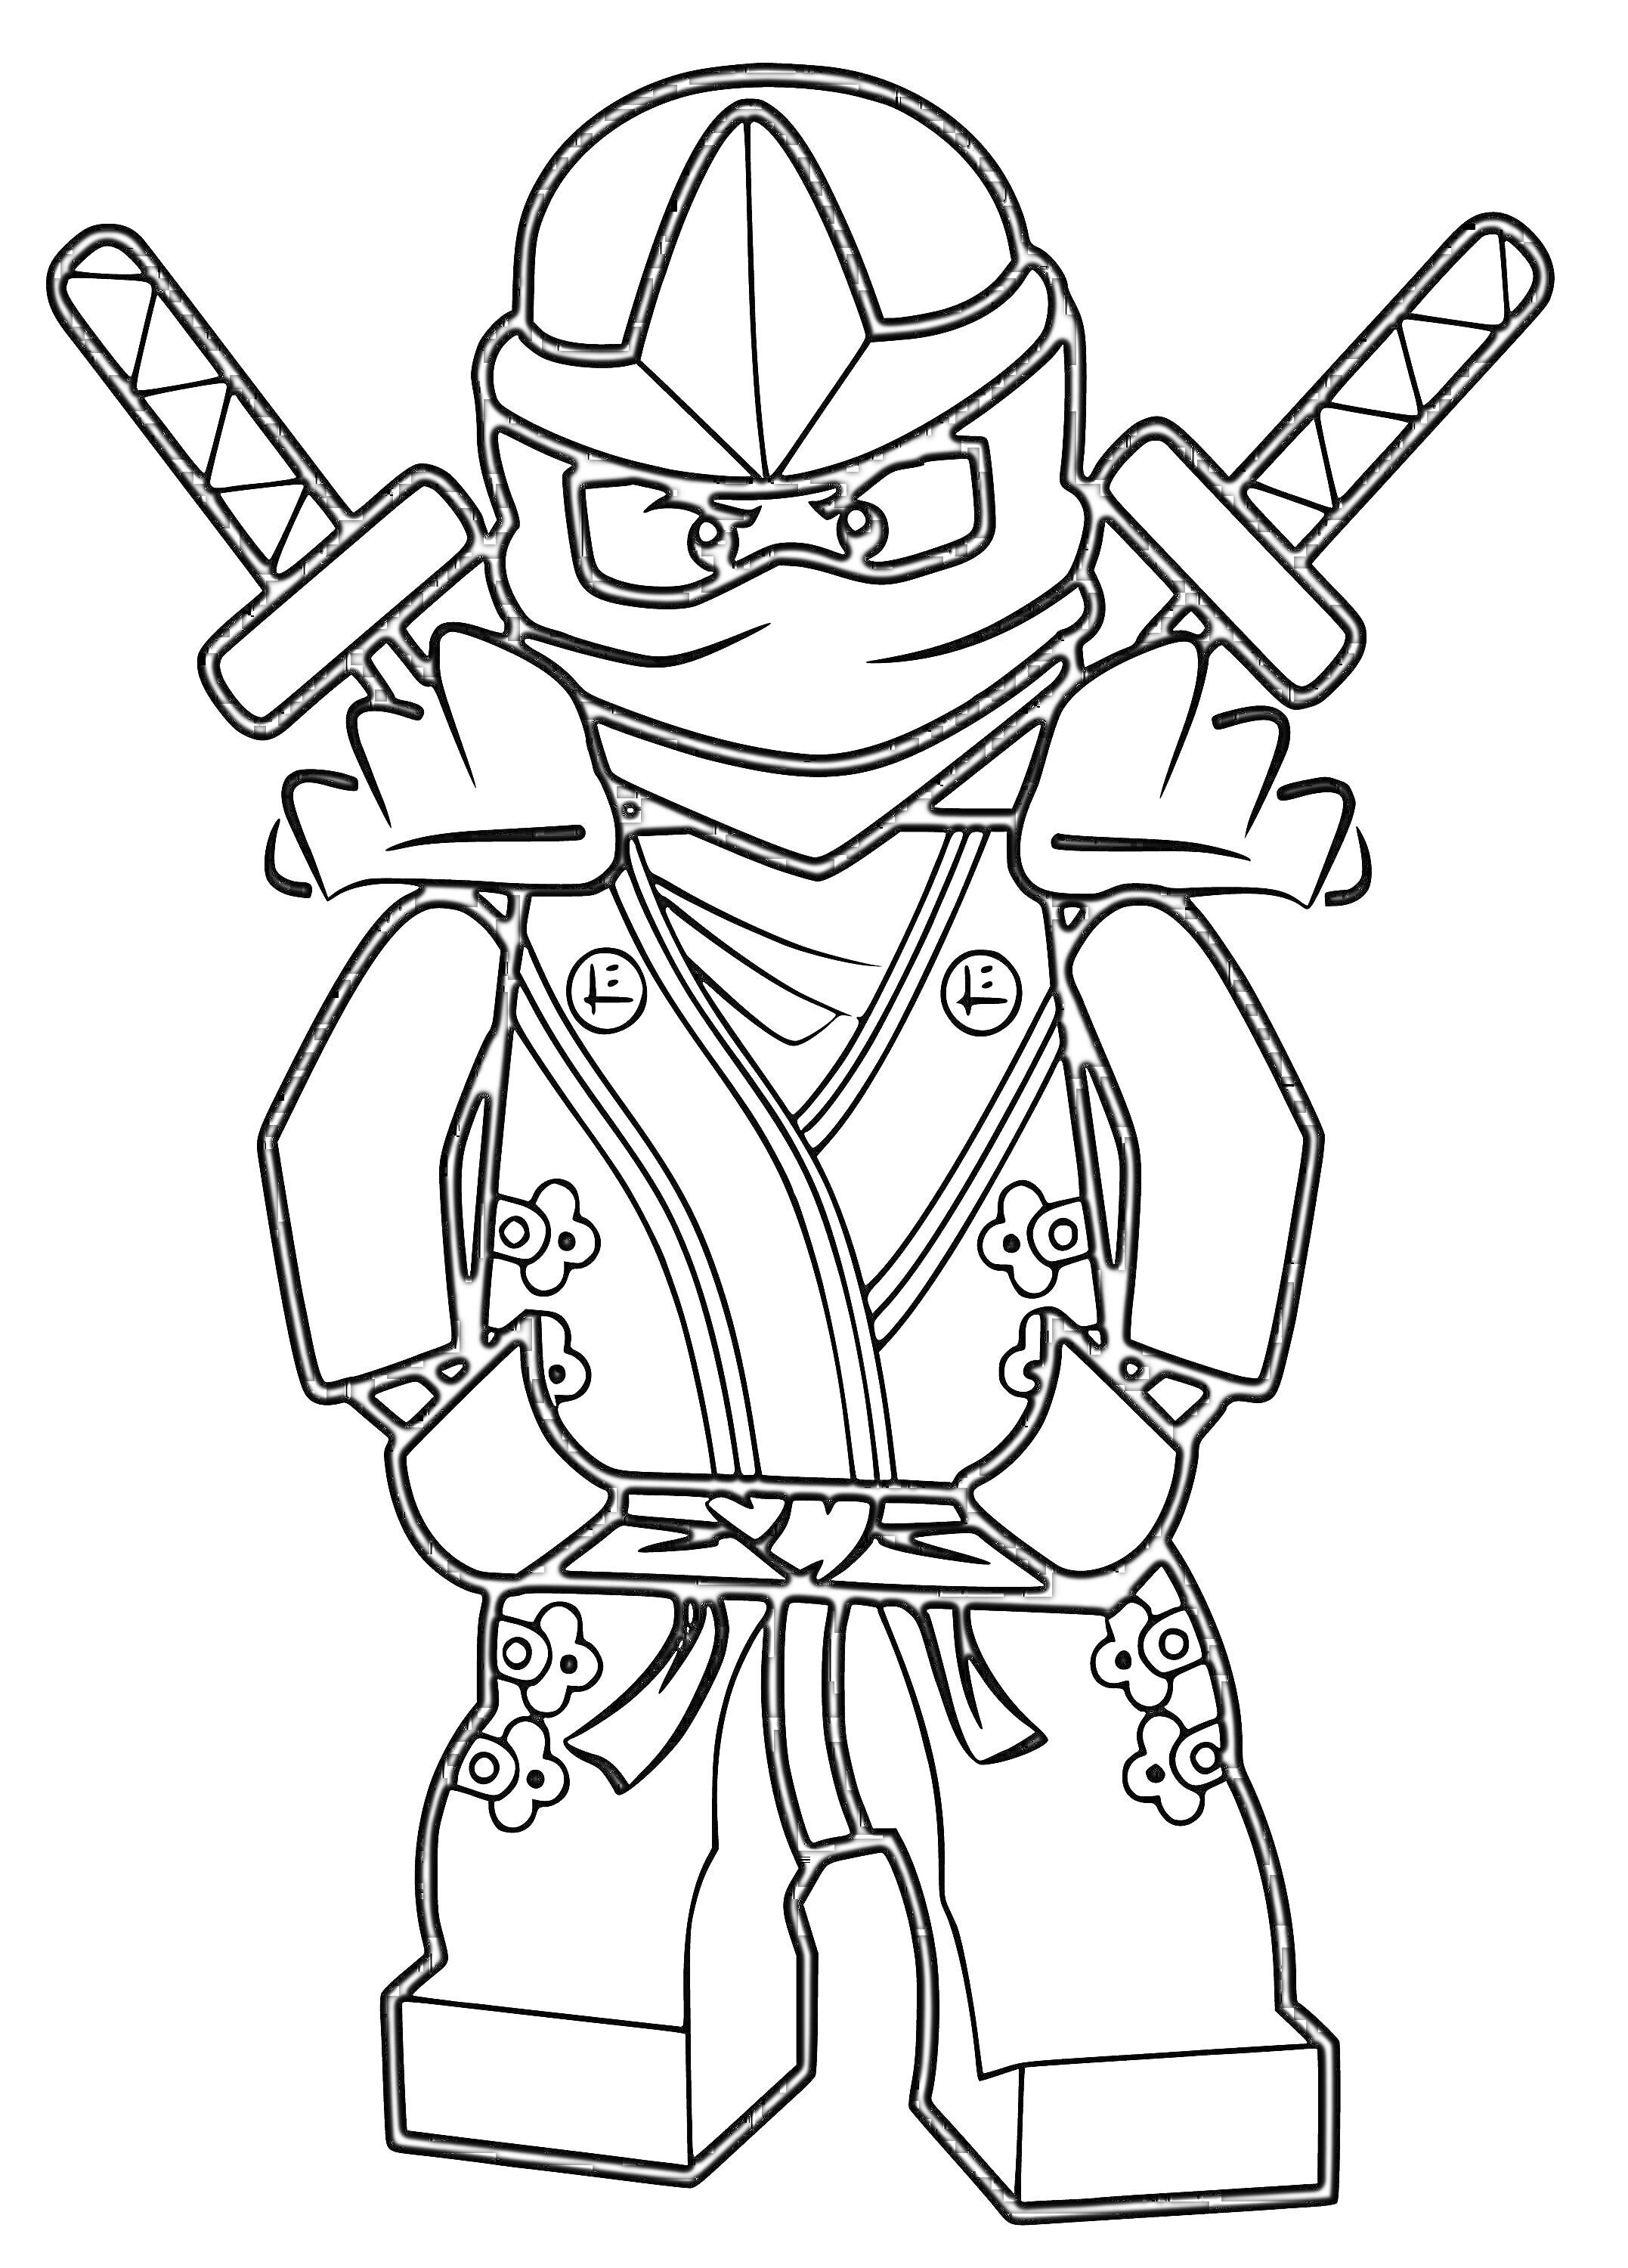 Раскраска Лего Ниндзя с двумя мечами на спине в боевом костюме